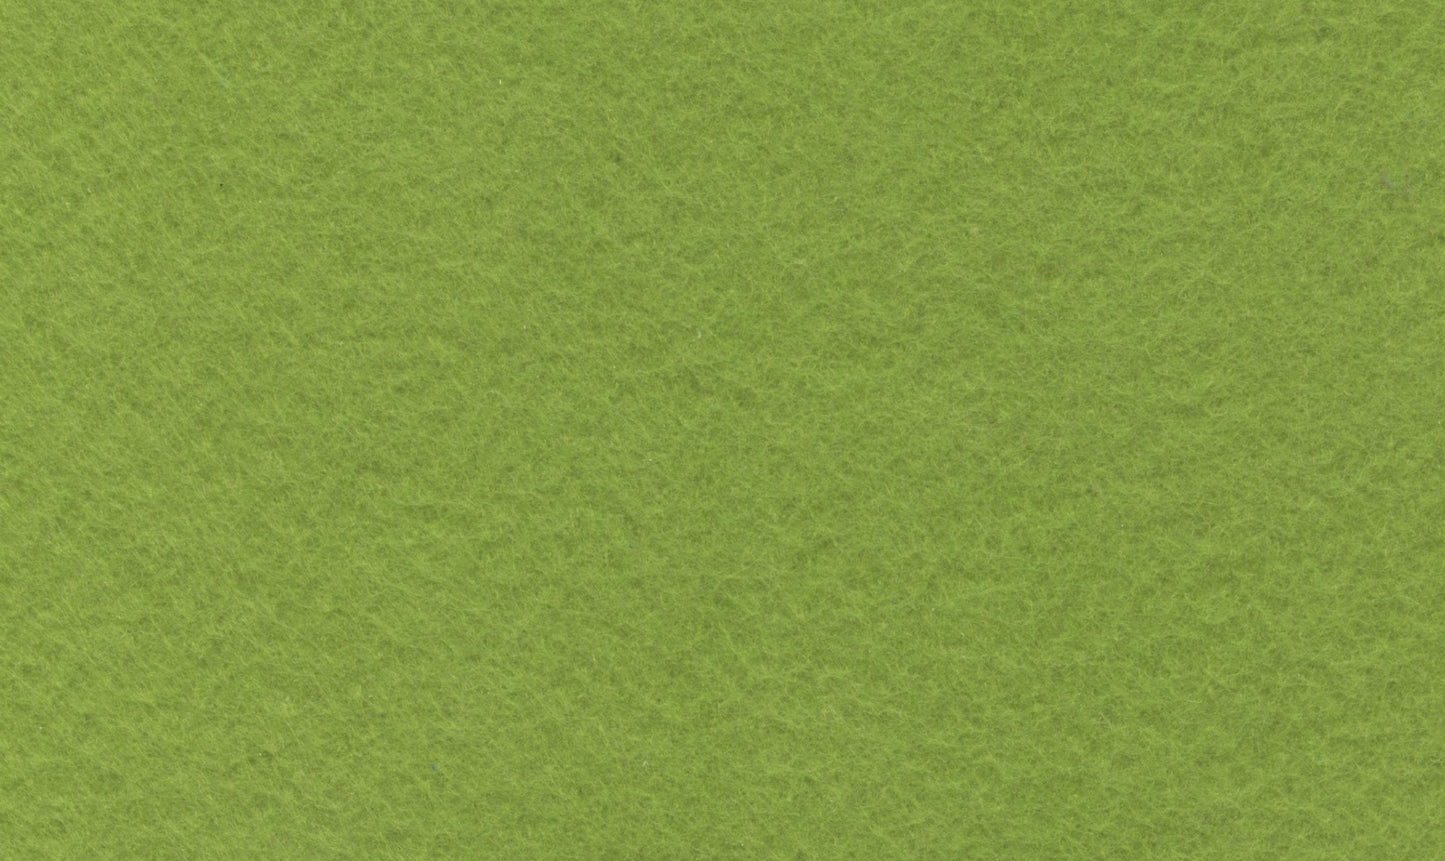 Felt - Rectangle 3 pieces - Grass Green - 15cm x 10cm